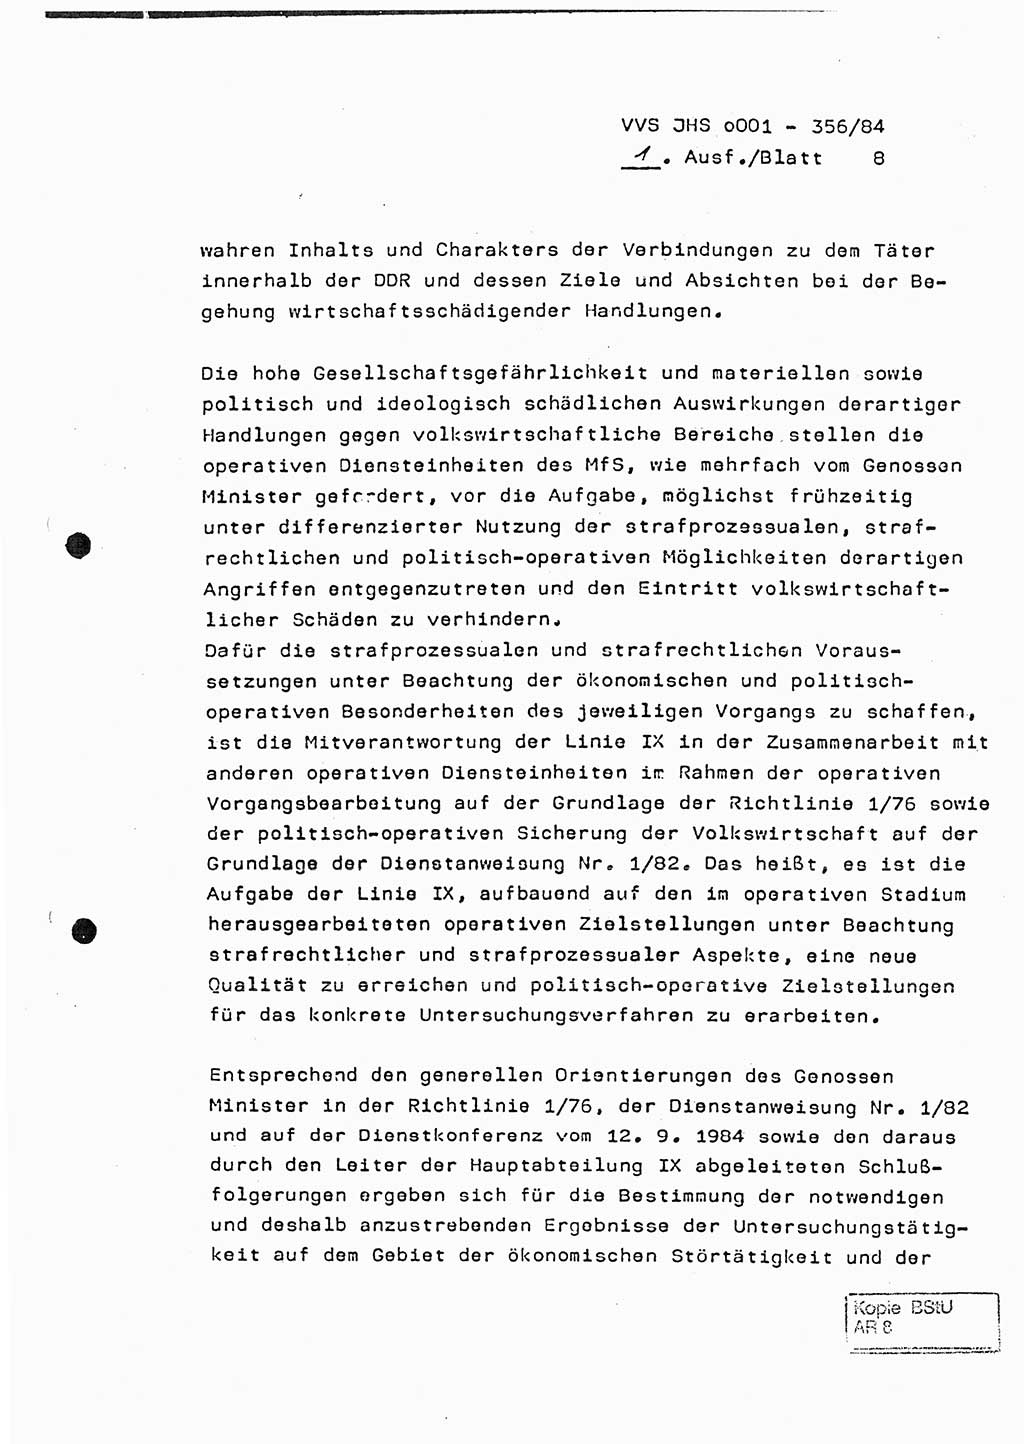 Diplomarbeit, Major Lutz Rahaus (HA Ⅸ/3), Ministerium für Staatssicherheit (MfS) [Deutsche Demokratische Republik (DDR)], Juristische Hochschule (JHS), Vertrauliche Verschlußsache (VVS) o001-356/84, Potsdam 1984, Seite 8 (Dipl.-Arb. MfS DDR JHS VVS o001-356/84 1984, S. 8)